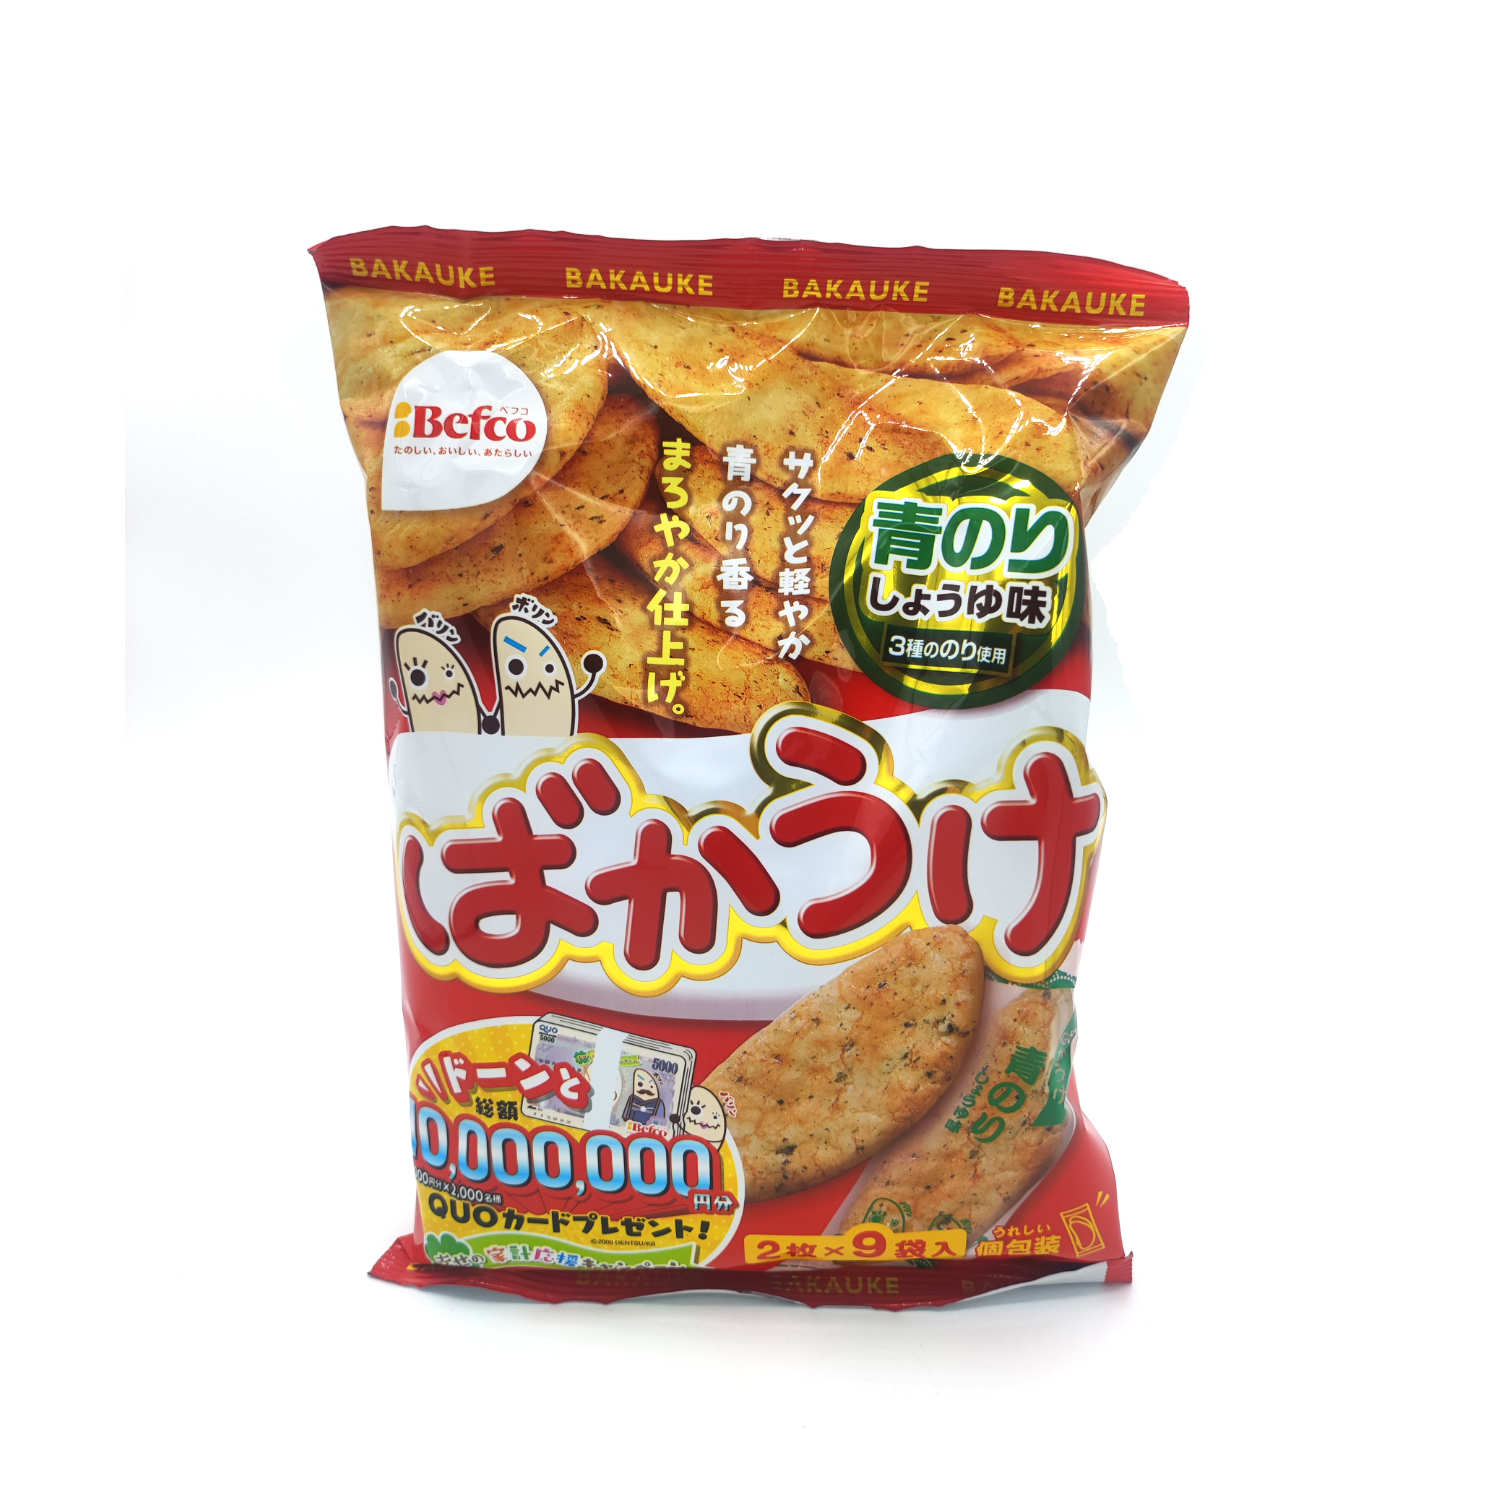 Bakauke Ao Nori Rice Cracker 100g